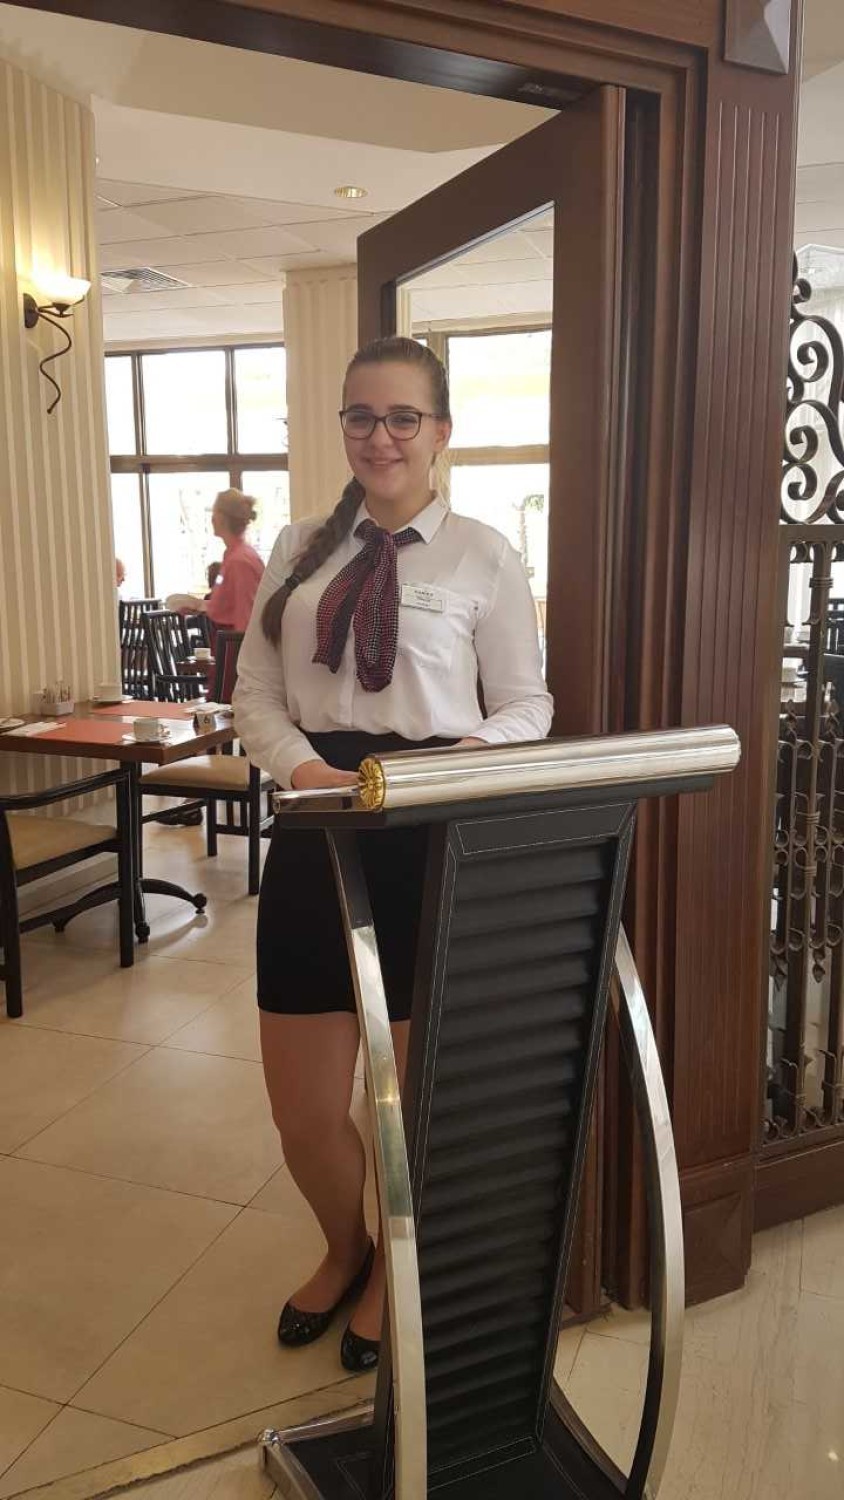 Staż hotelarski uczniów ZSOT na Cyprze 2019.